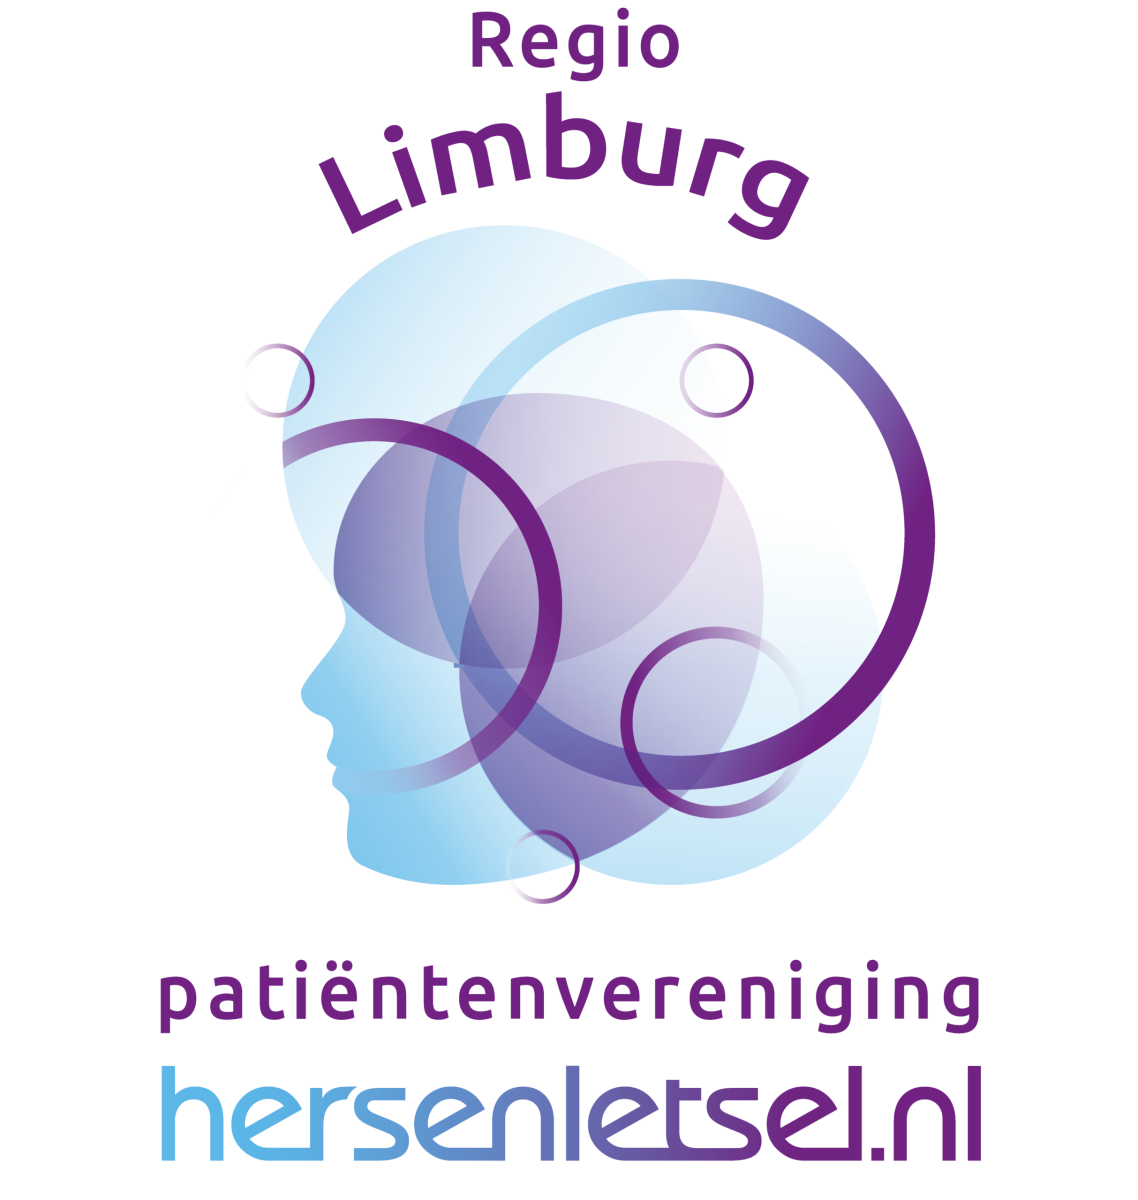 Logo Patiëntenvereniging Hersenletsel.nl Regio Limburg